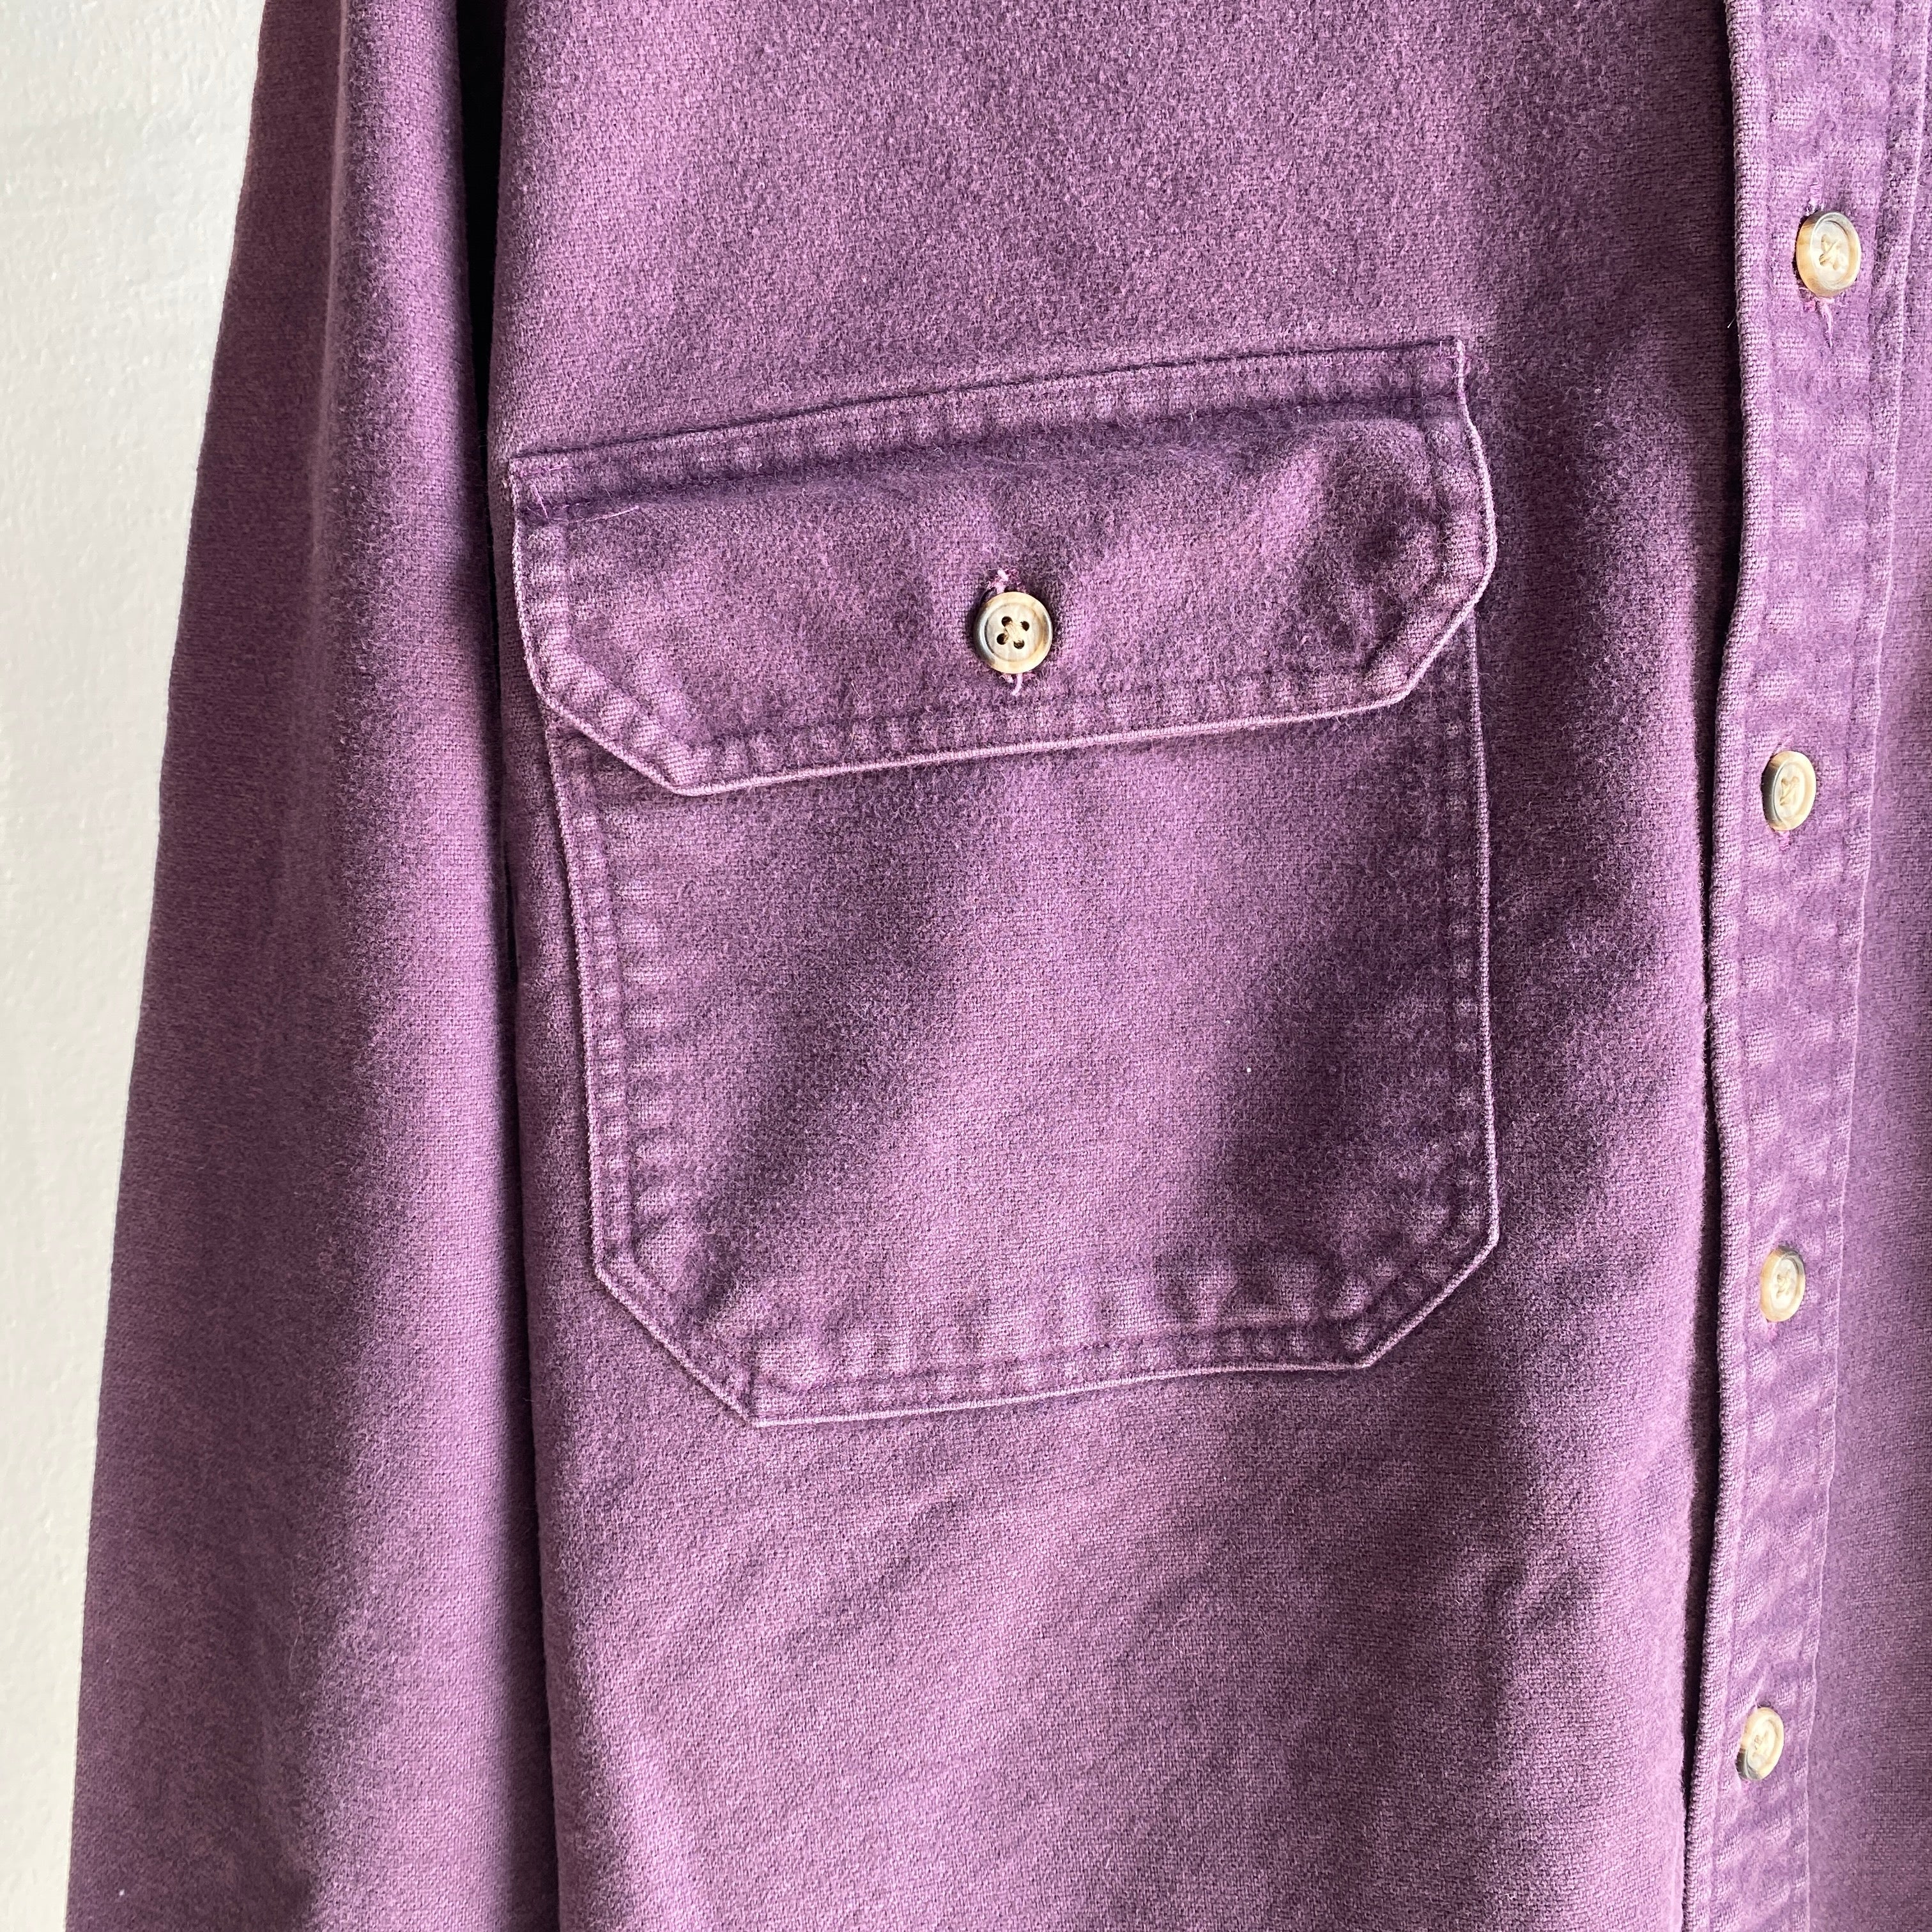 1990s Woolrich Heavy Cotton Purple Flannel